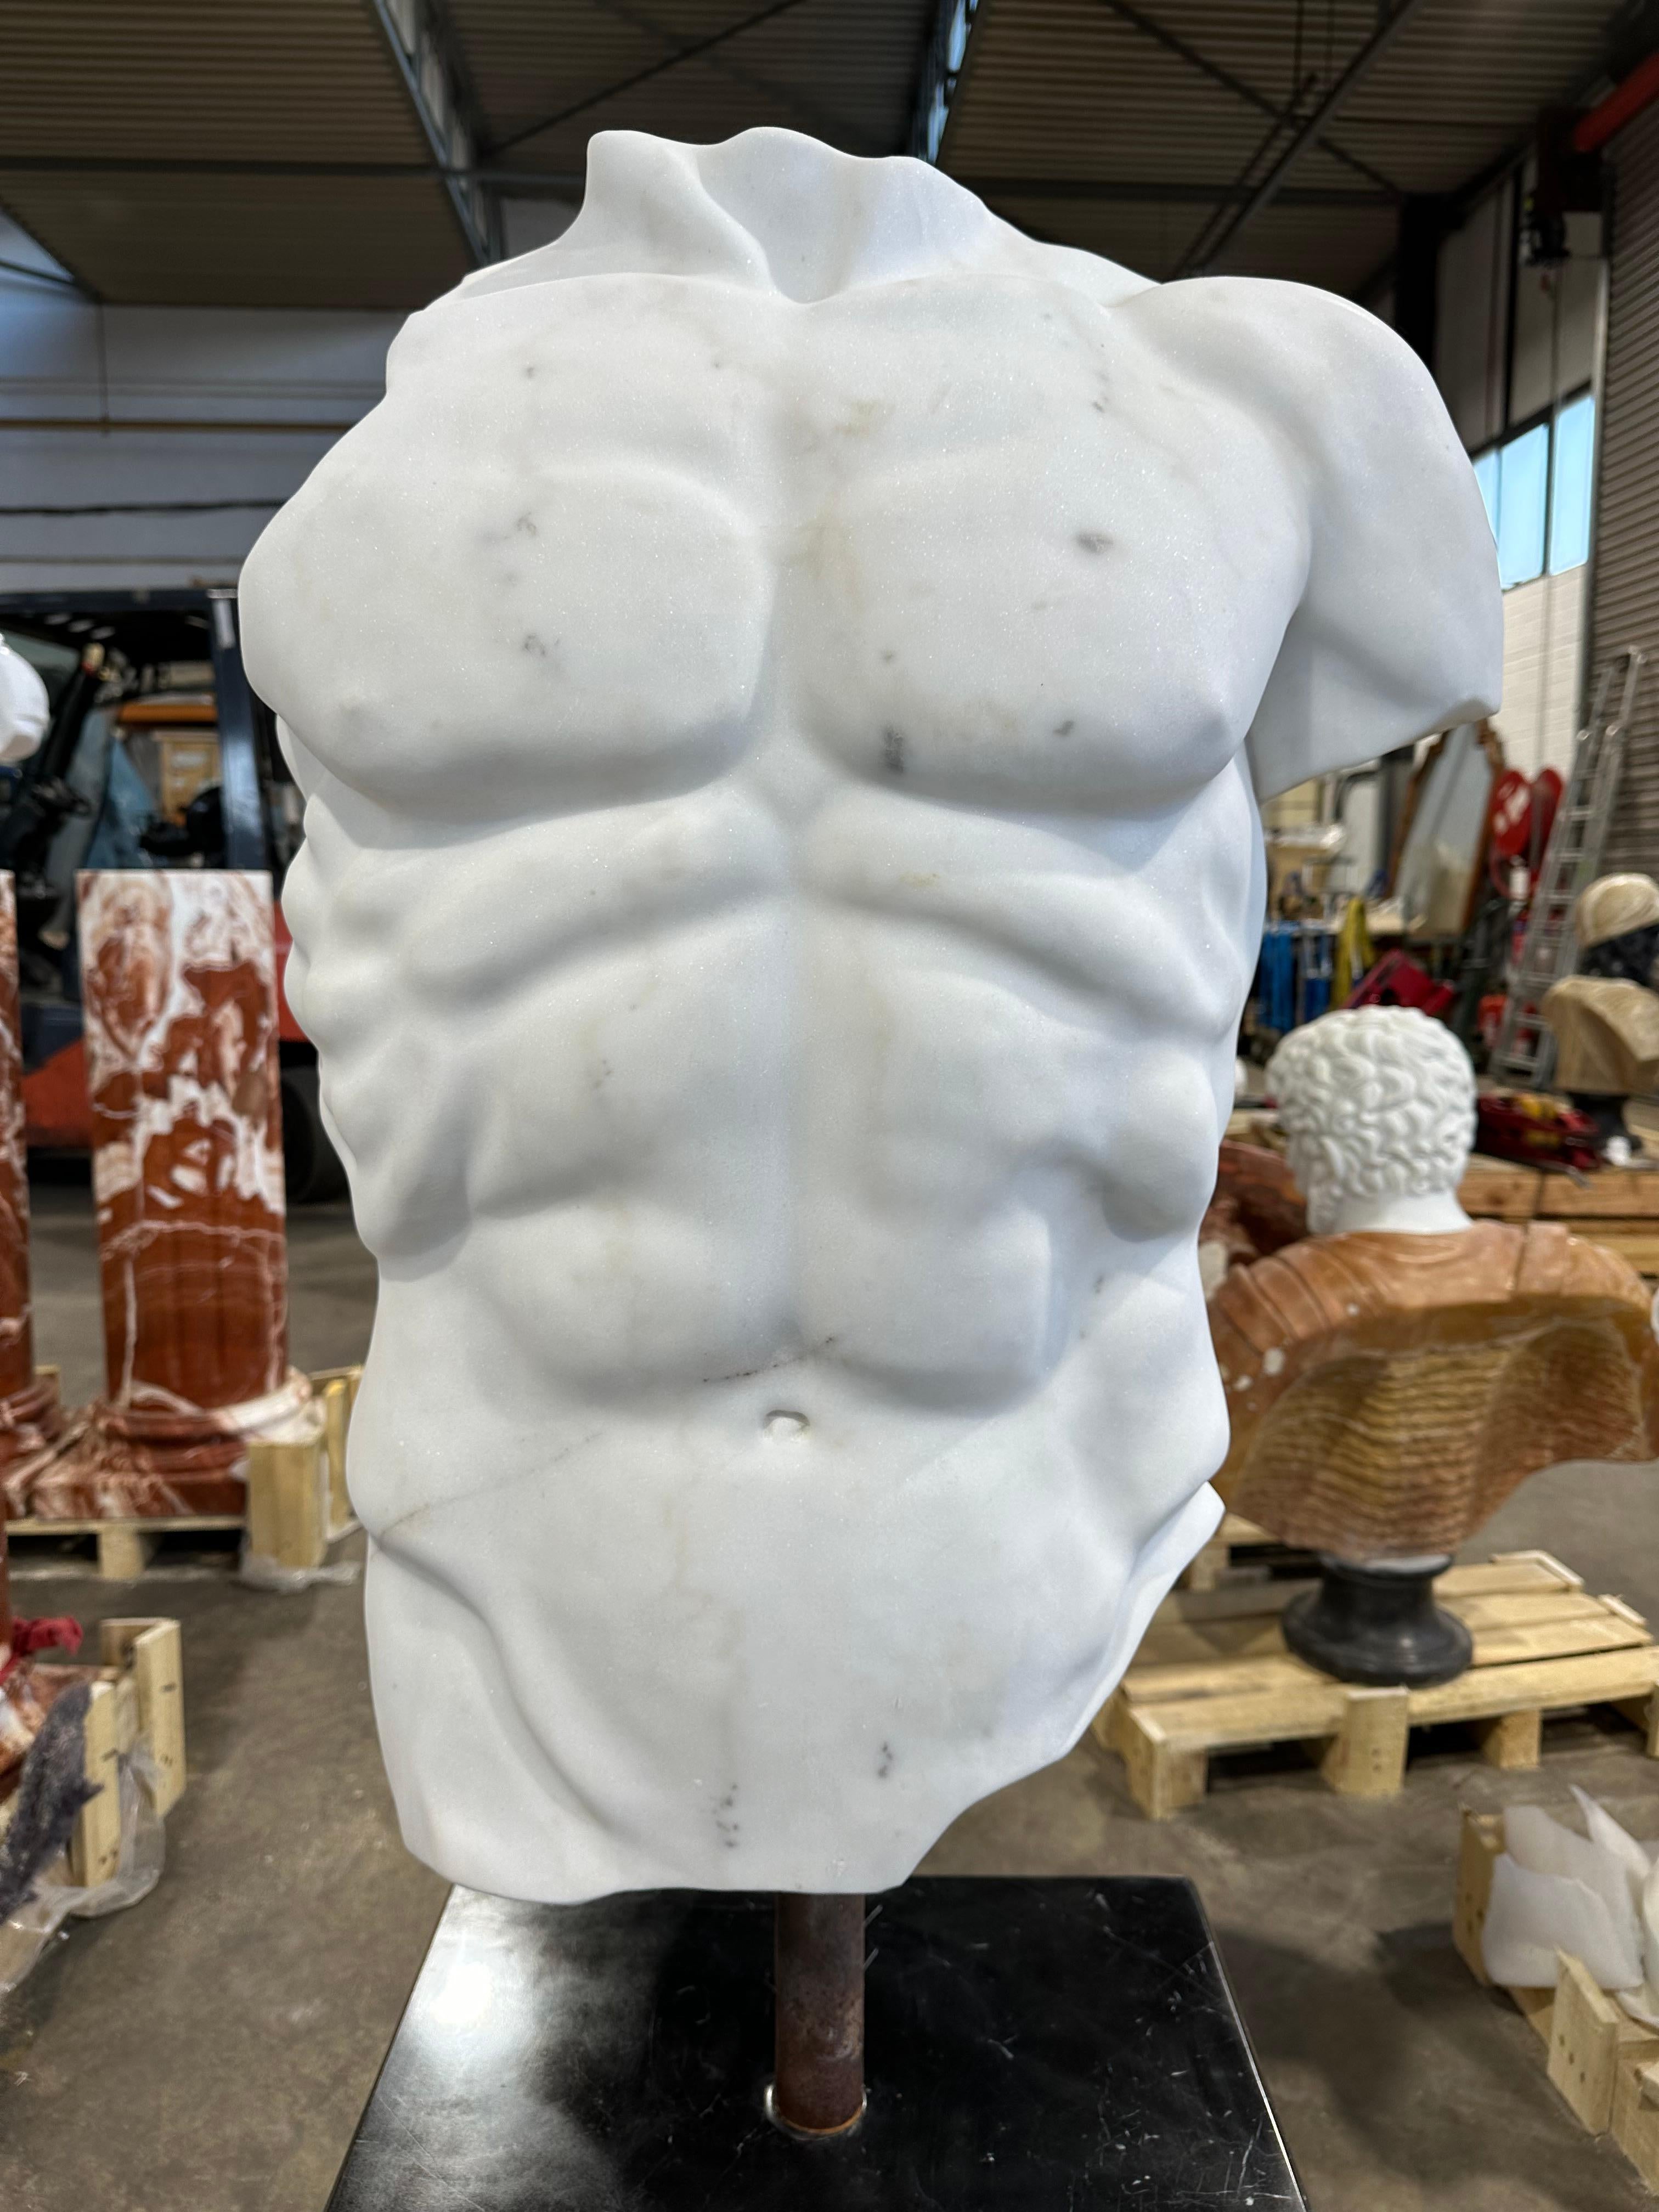 Torse d'homme de style grec en marbre blanc, habilement sculpté et détaillé, sur un socle en marbre noir. Les contours des muscles sont définis, le marbre est lisse. Un buste frappant qui ferait une belle pièce maîtresse.